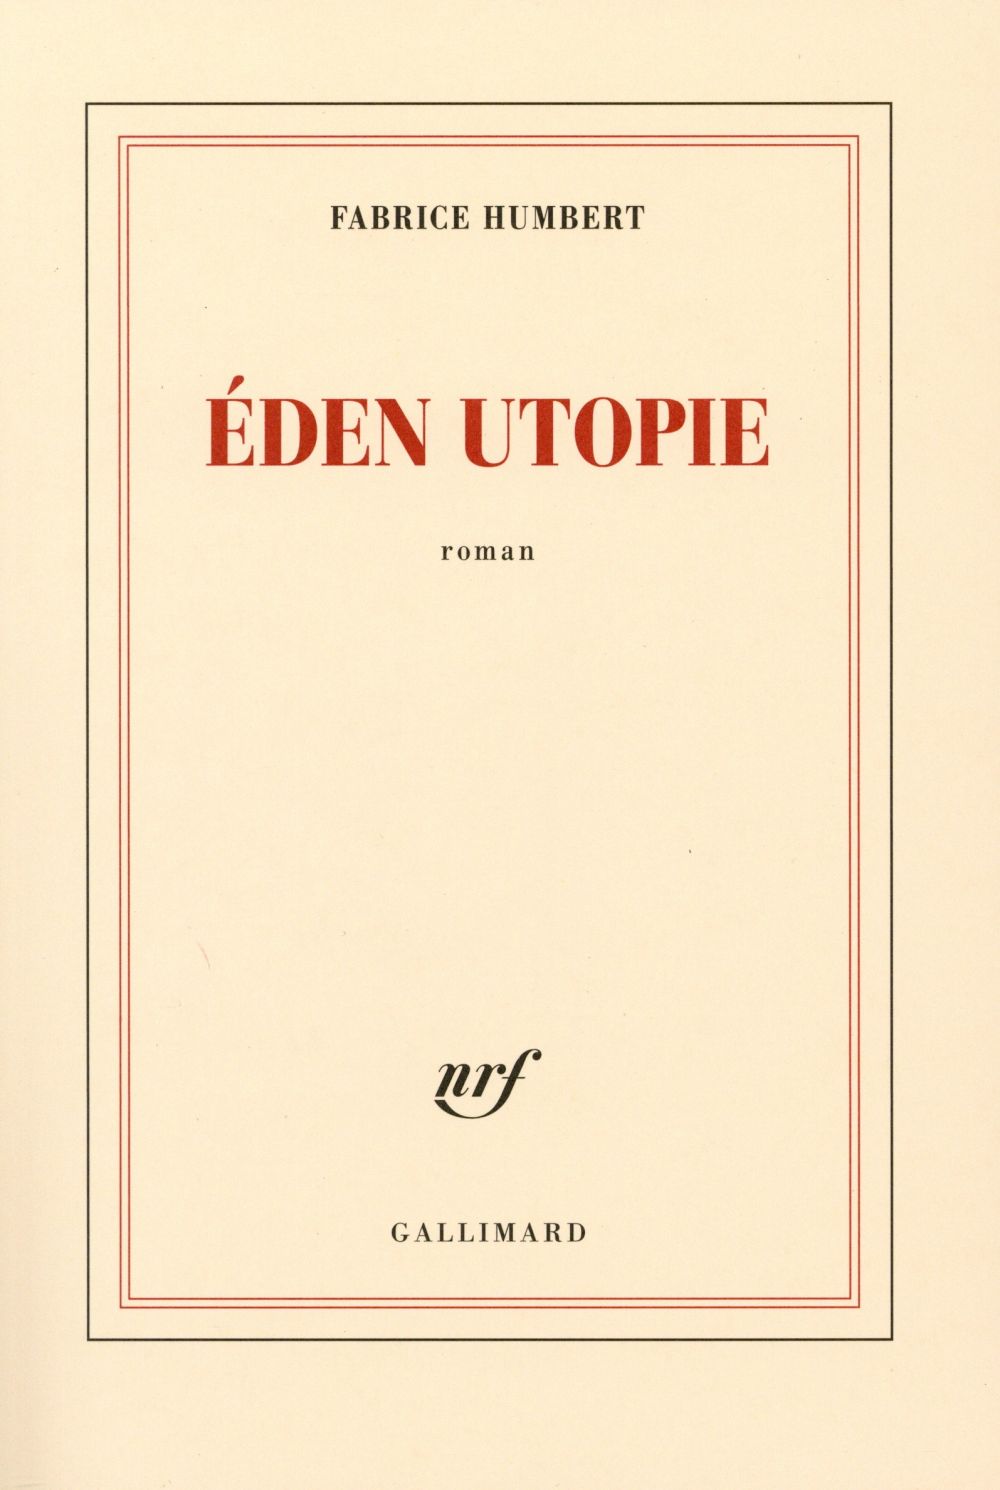 La chronique #15 du Club des Explorateurs : "Eden Utopie" de Fabrice Humbert